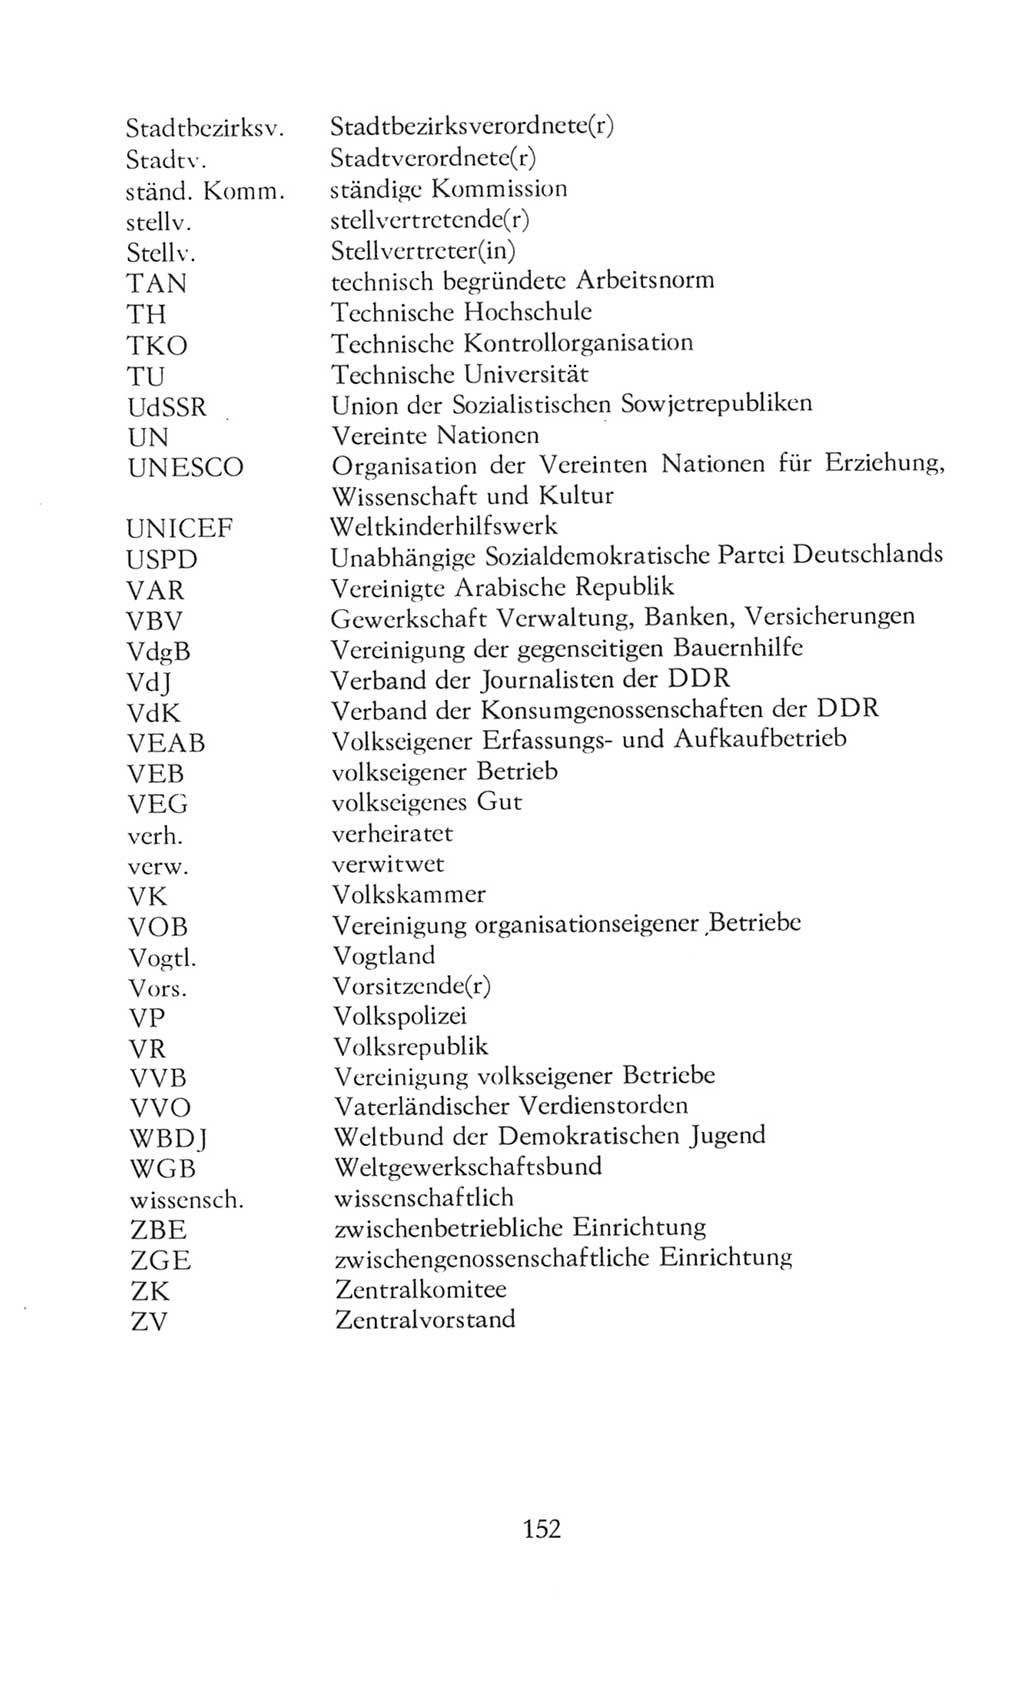 Volkskammer (VK) der Deutschen Demokratischen Republik (DDR), 8. Wahlperiode 1981-1986, Seite 152 (VK. DDR 8. WP. 1981-1986, S. 152)